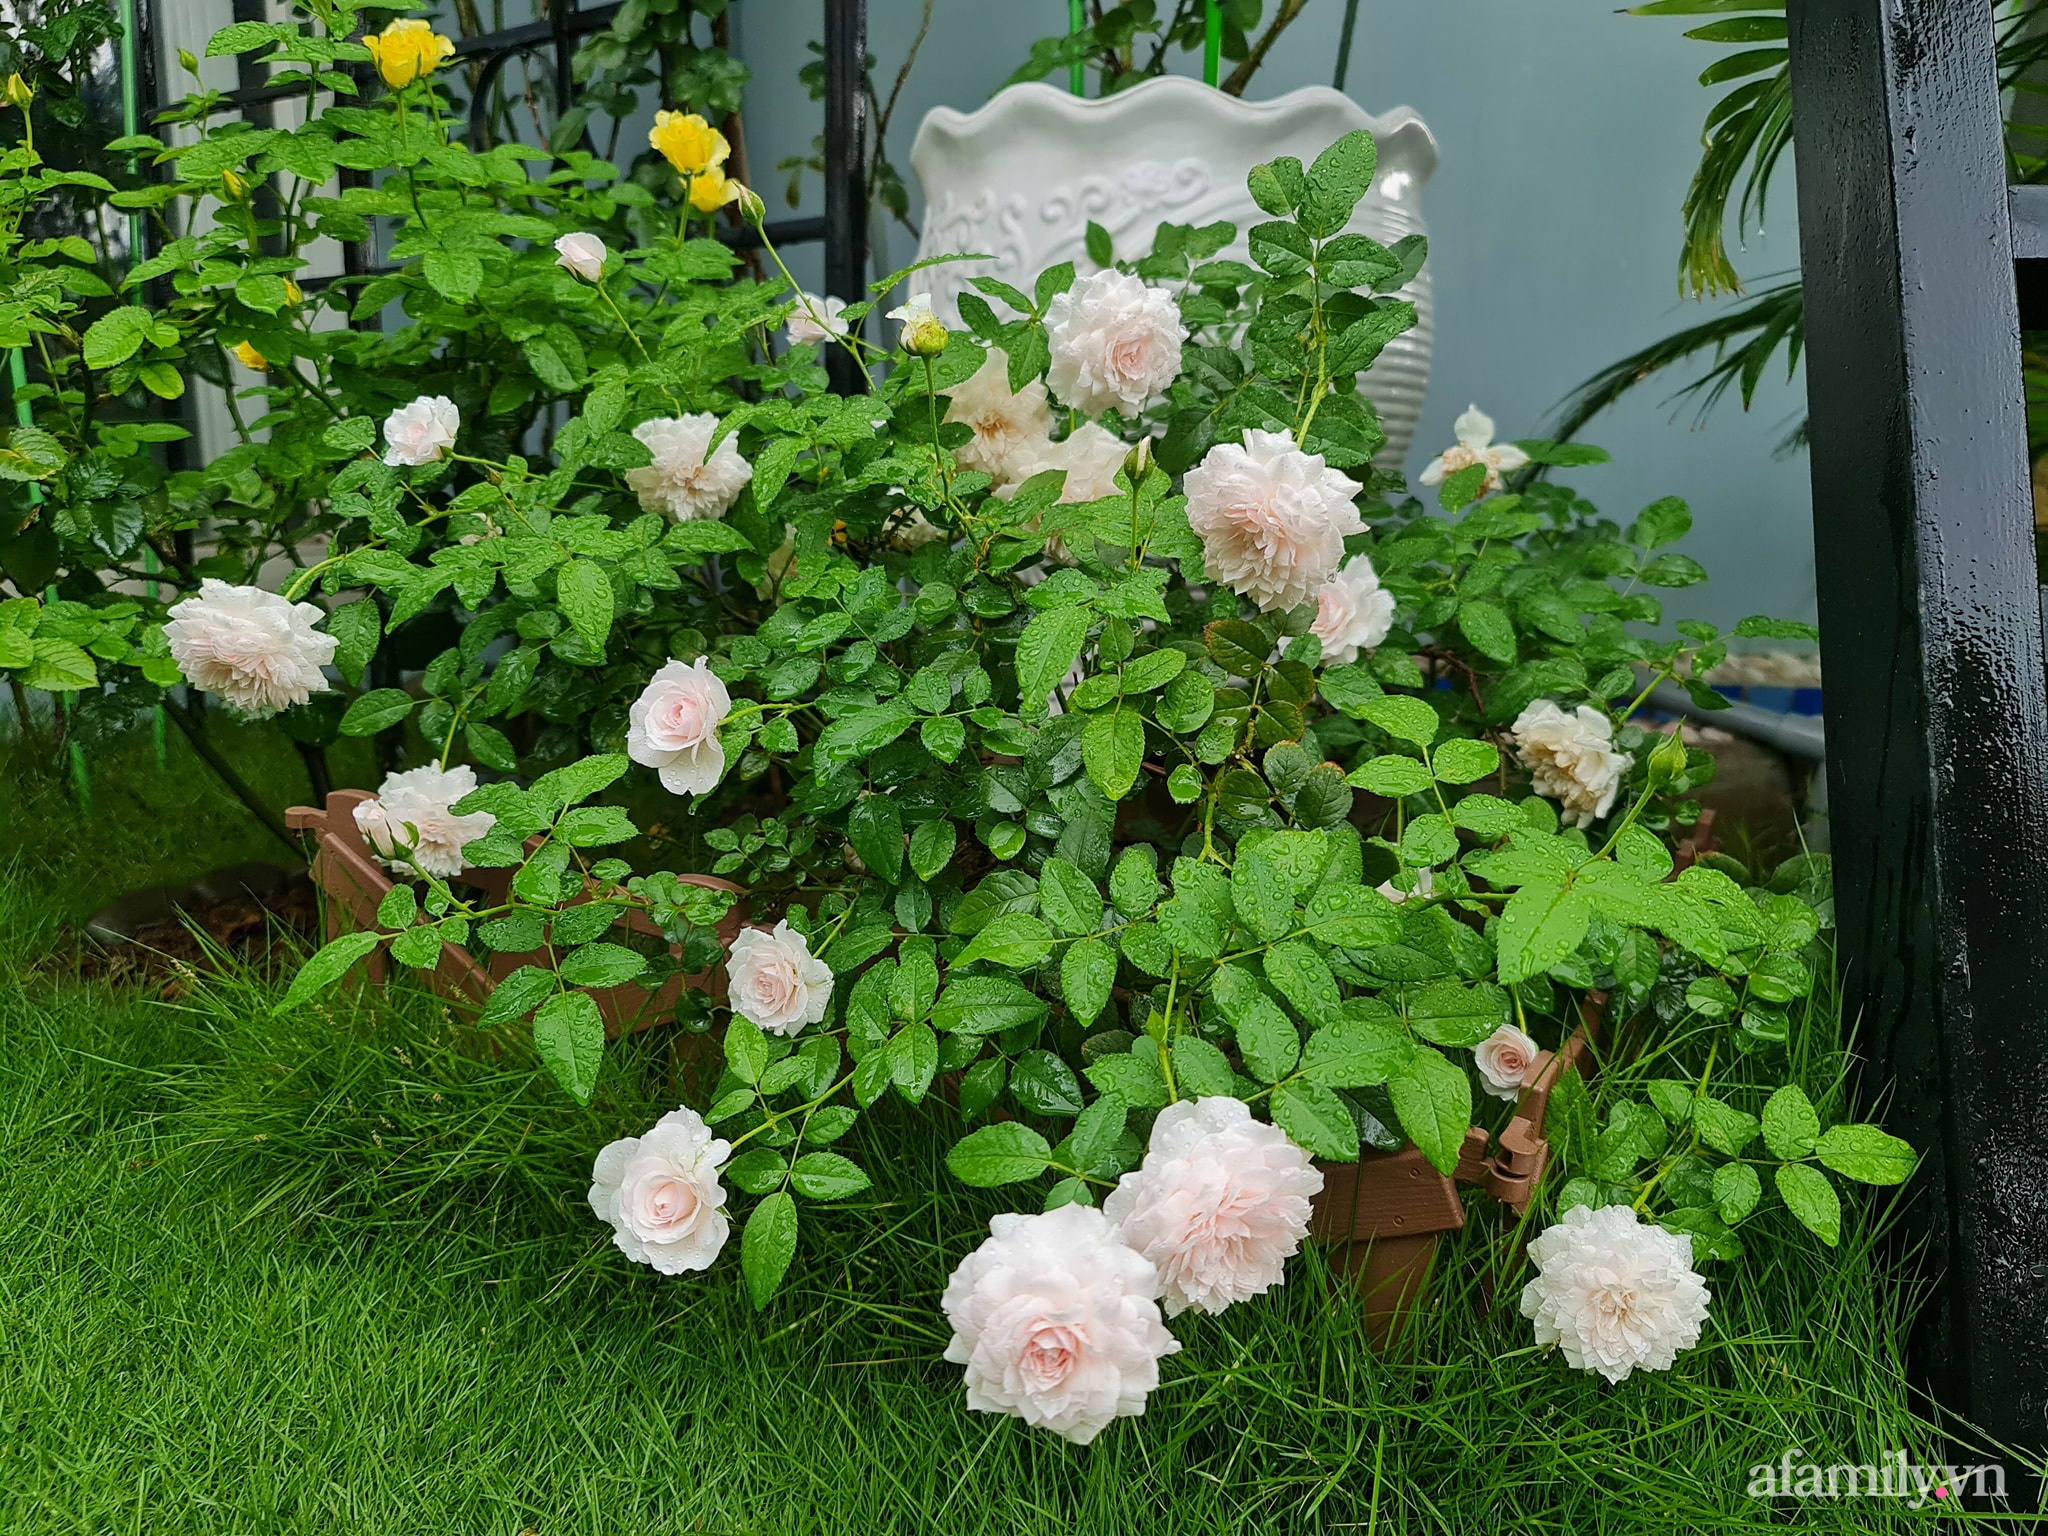 Đắm say trước vẻ đẹp ngọt lịm tim của vườn hồng rực rỡ trên sân thượng ở Bình Dương - Ảnh 8.